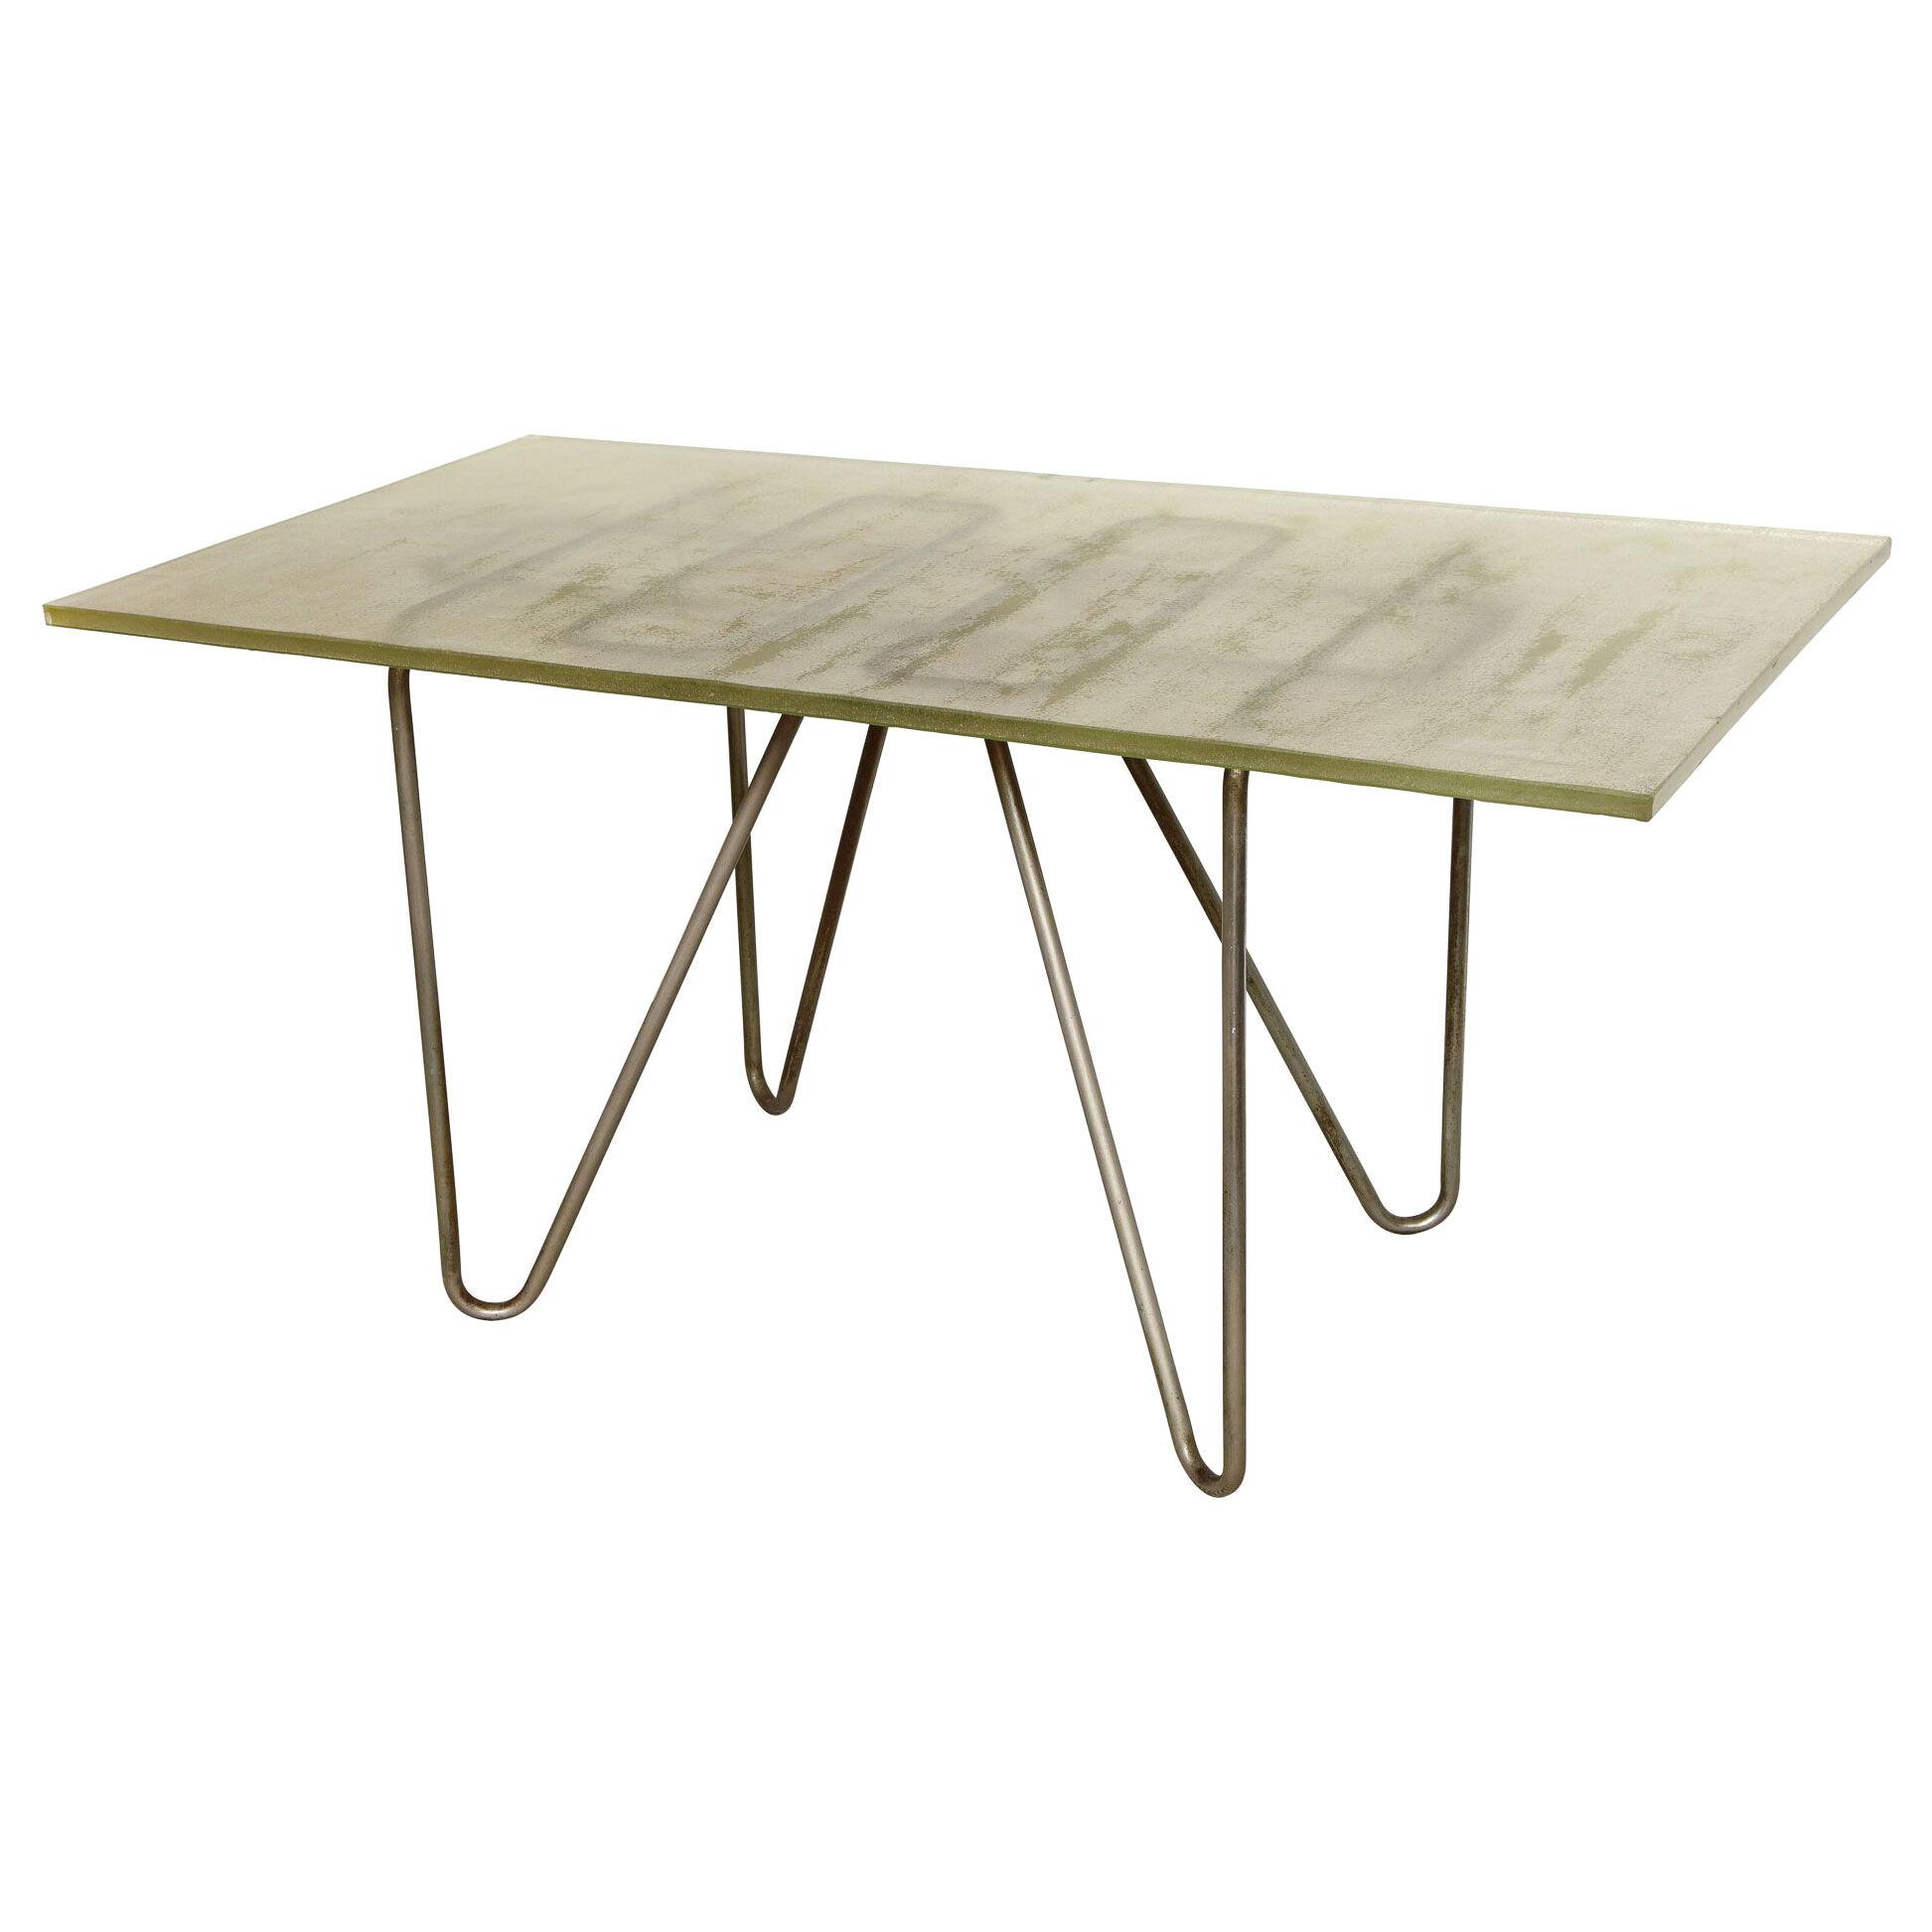 Rene Herbst Style Desk / Table